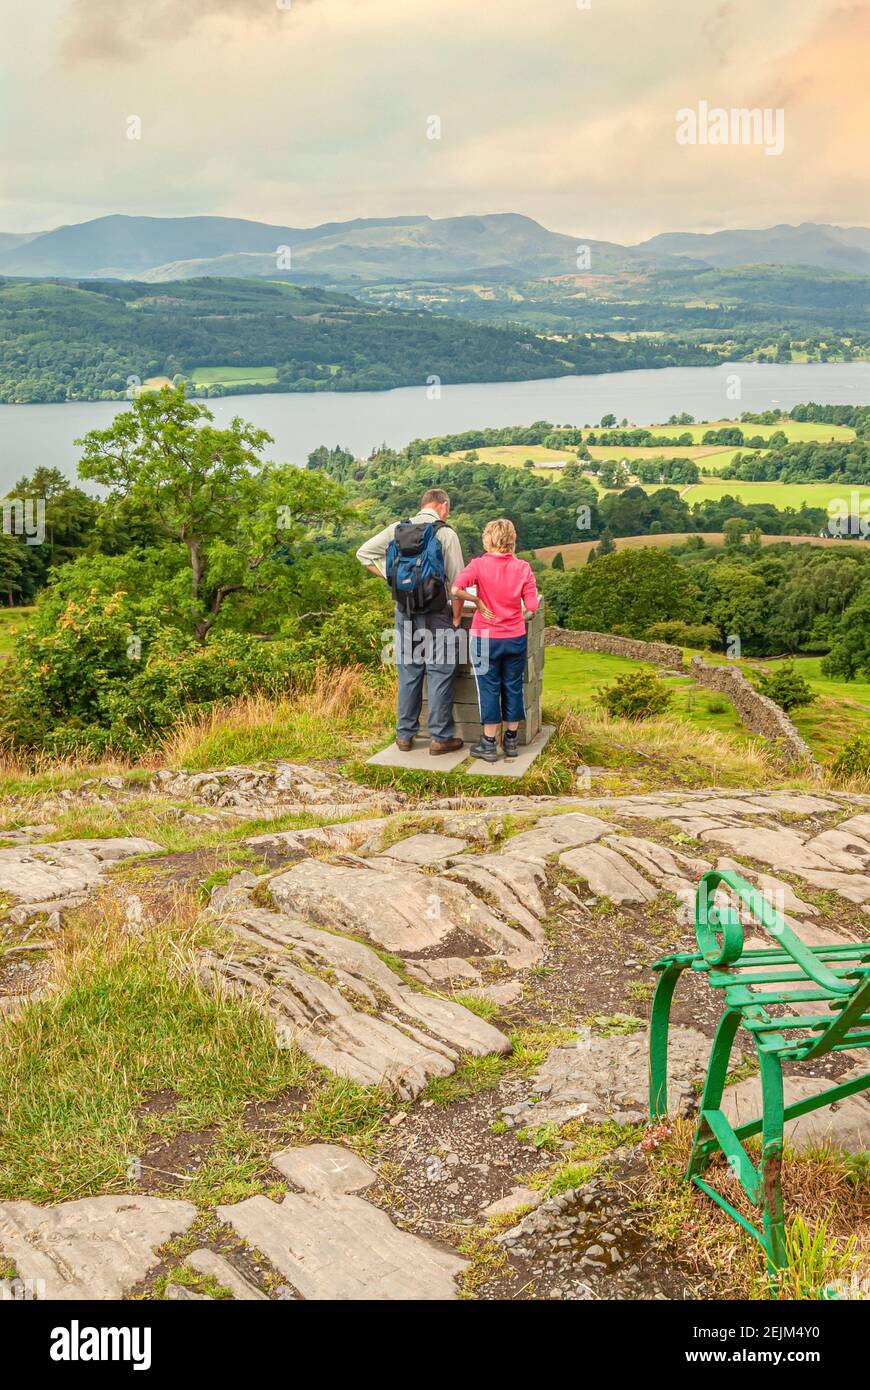 Gli escursionisti godono della vista al punto panoramico Orrest Head vicino a Windermere, Lake District, Cumbria, Inghilterra, Regno Unito Foto Stock